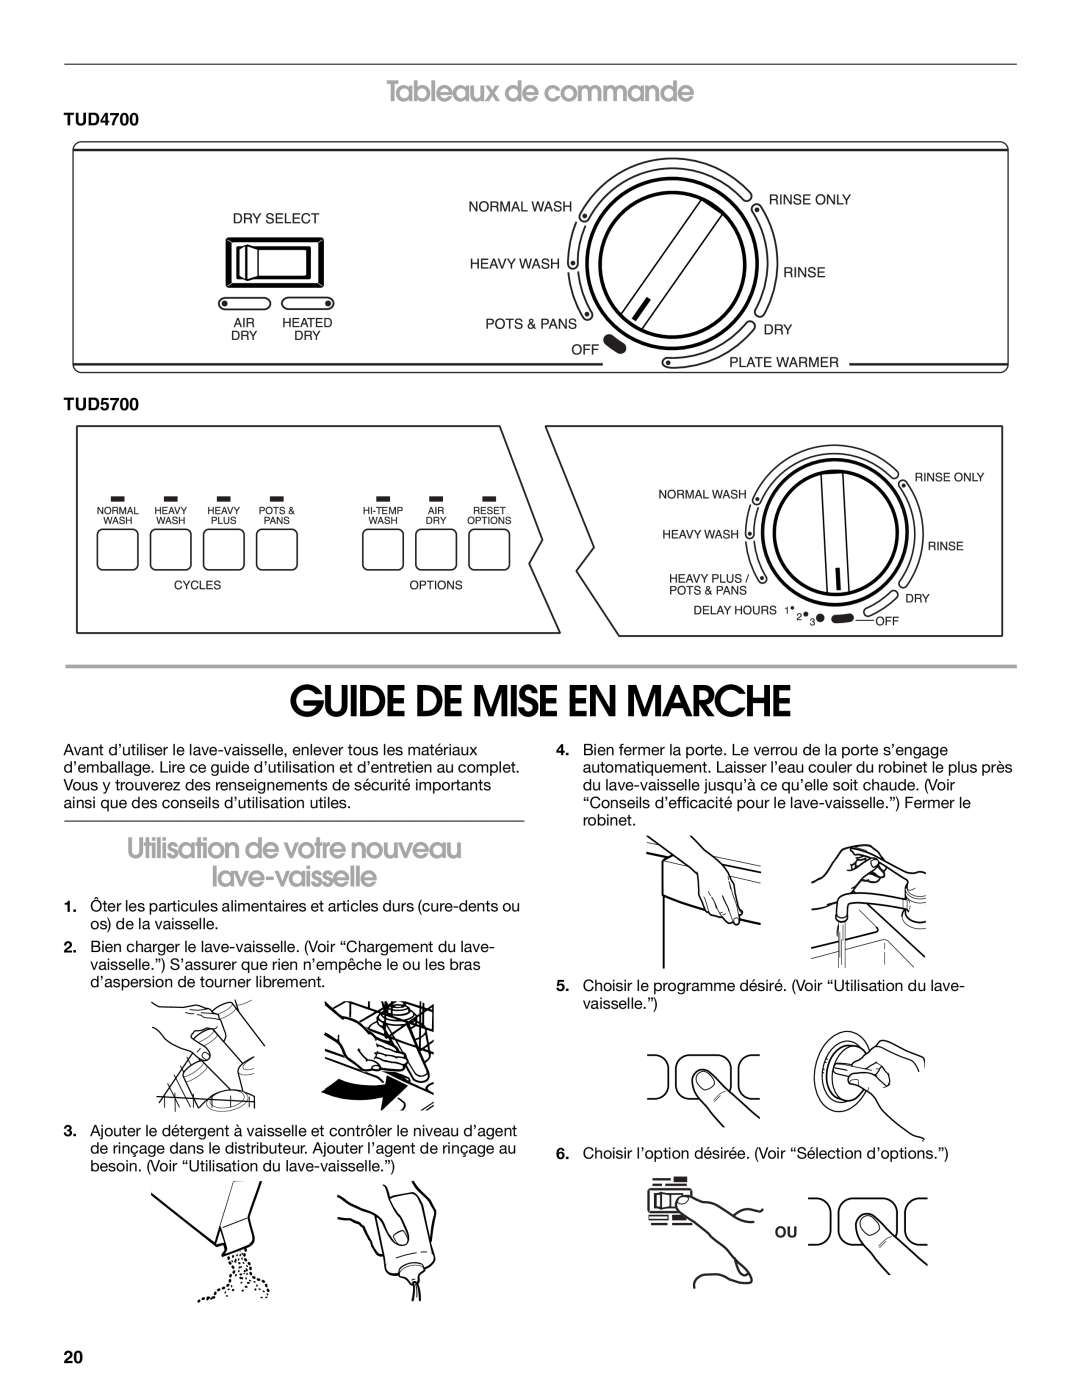 Estate TUD5700, TUD4700 manual Guide De Mise En Marche, Tableaux de commande, Utilisation de votre nouveau lave-vaisselle 